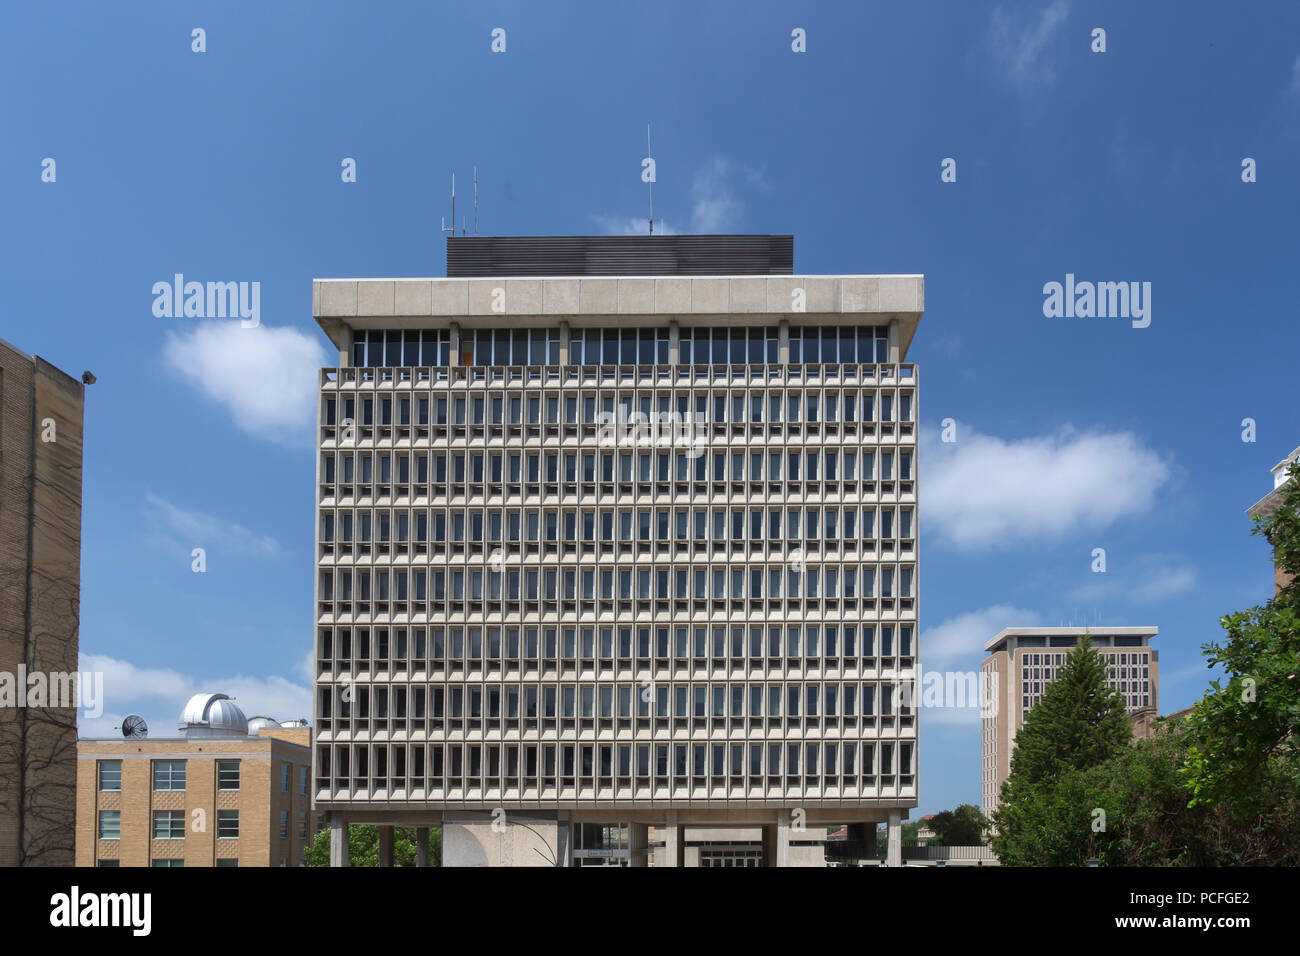 MADISON, WI/USA - 26. JUNI 2014: Der E.B. Van Vleck Hall Gebäude auf dem Campus der Universität von Wisconsin-Madison. Stockfoto